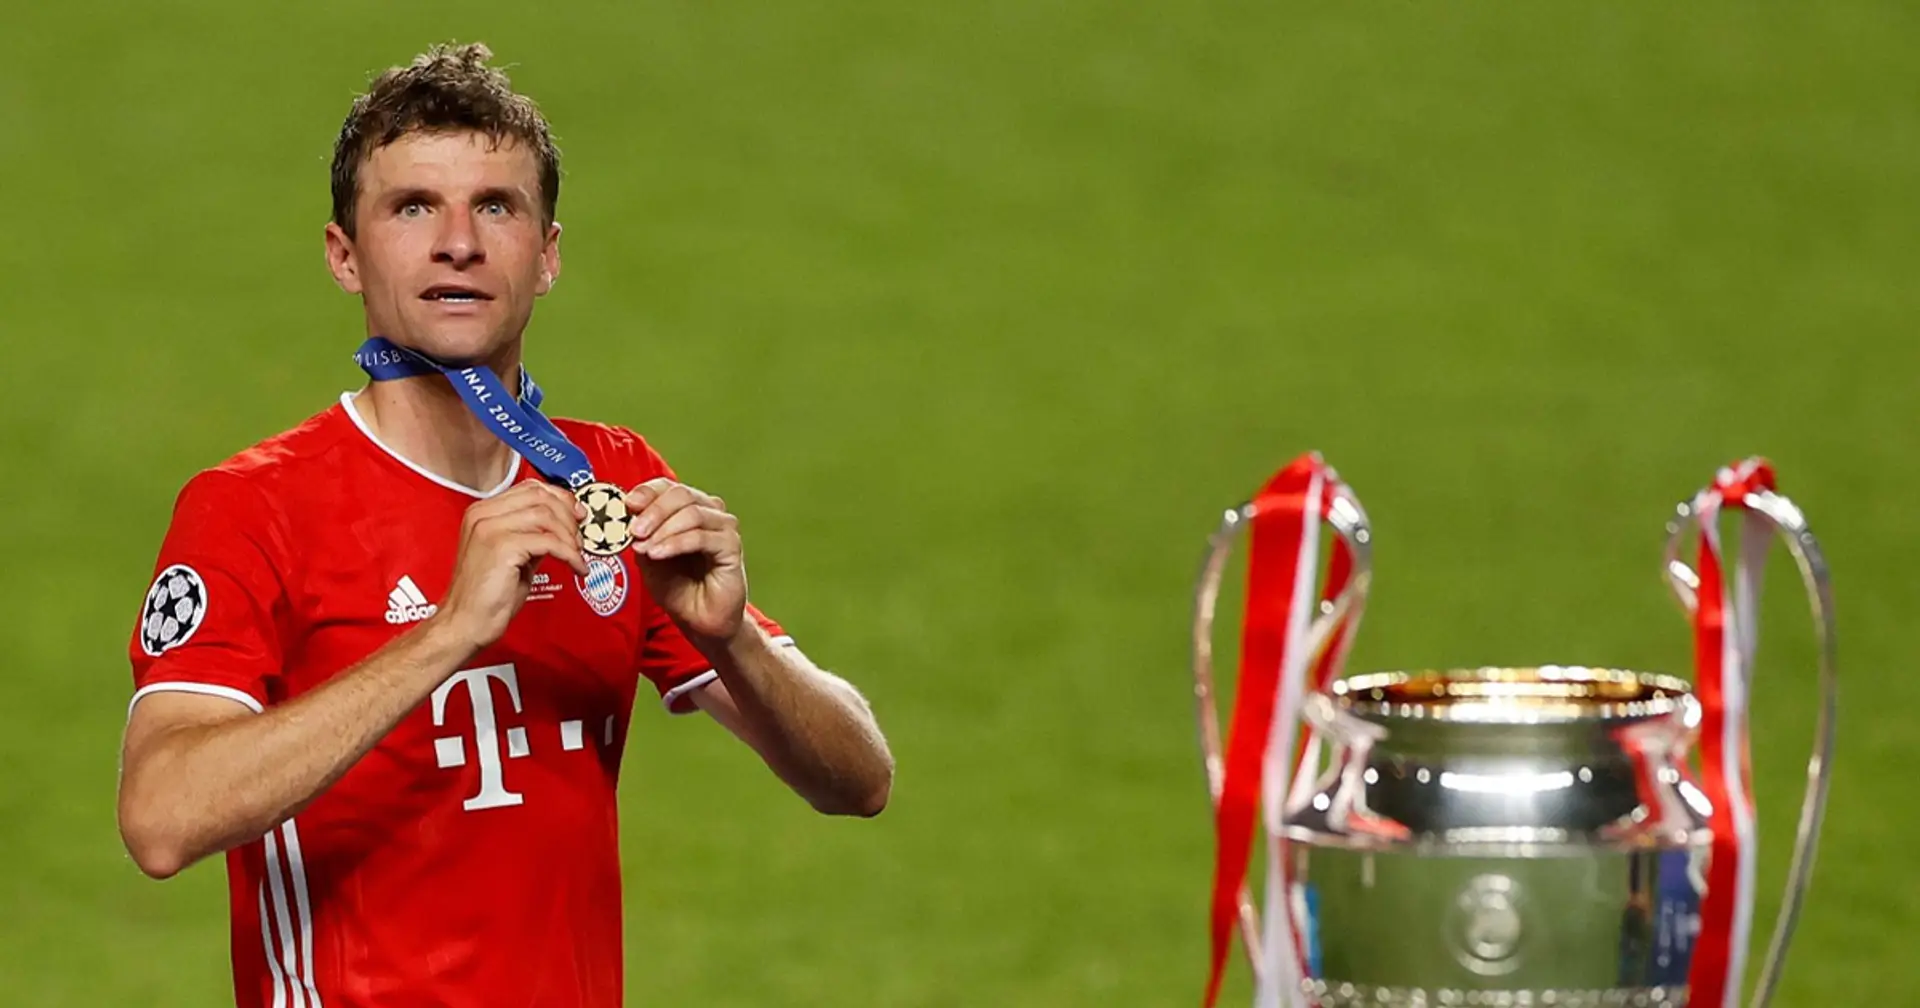 Thomas Müller ist einer der treuesten Spieler Europas: 12 Jahre beim FC Bayern München